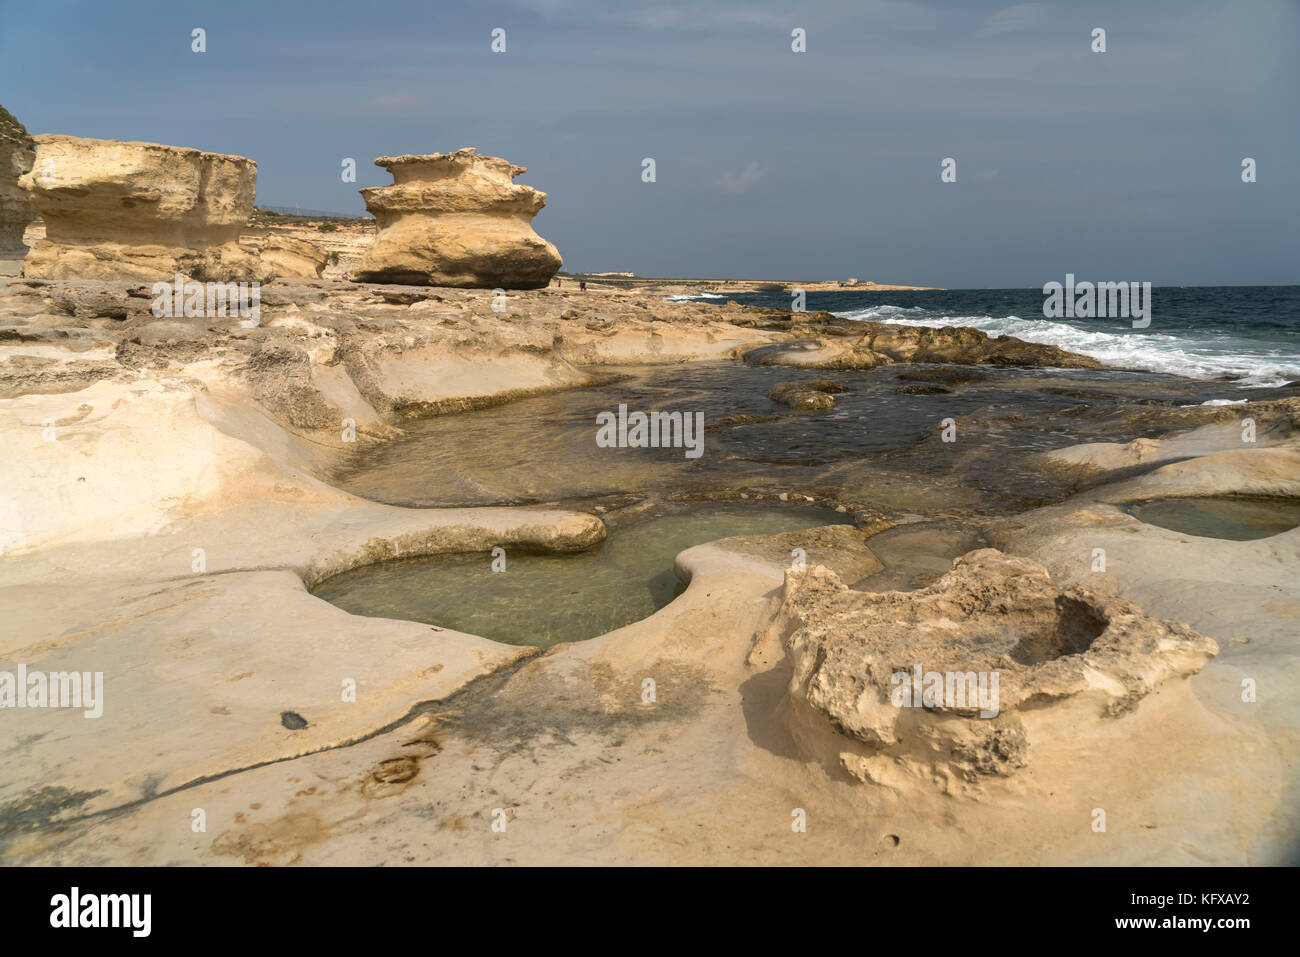 Felsige küste mit salzpfannen bei st. Peter's pool auf der halbinsel delimara Marsaxlokk, Malte | nahe côte rocheuse avec salines à côté de St Peter's. Banque D'Images